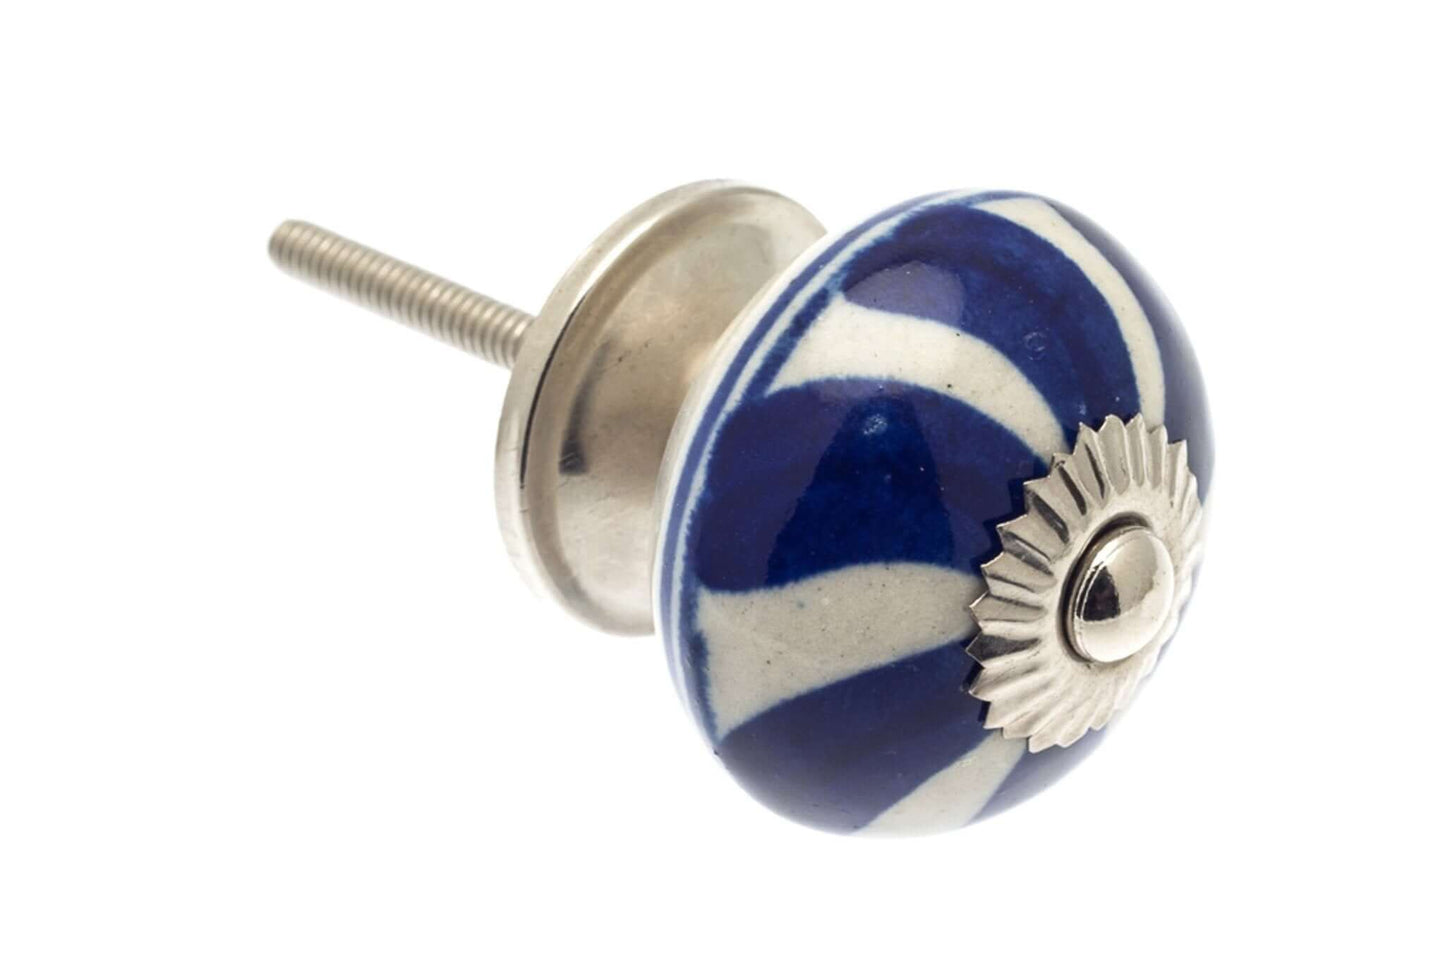 Ceramic Cupboard Knobs - Round Ceramic Cupboard Knob Blue & White Candy Swirls 40mm (MT-80)